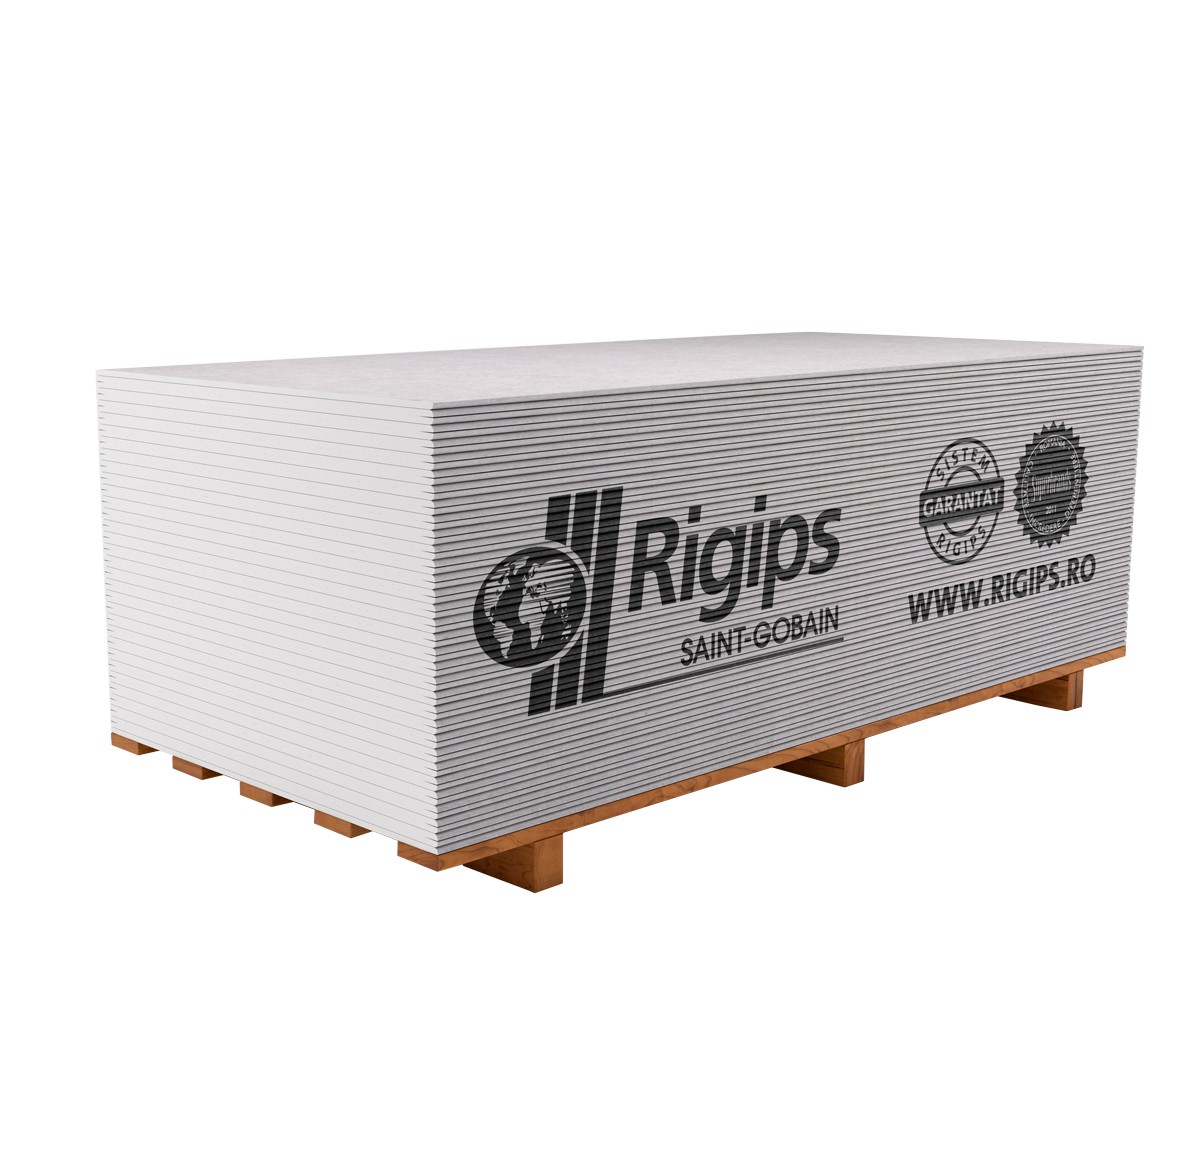 Gips-carton 12,5 RB (2,5*1,2) REGIPS